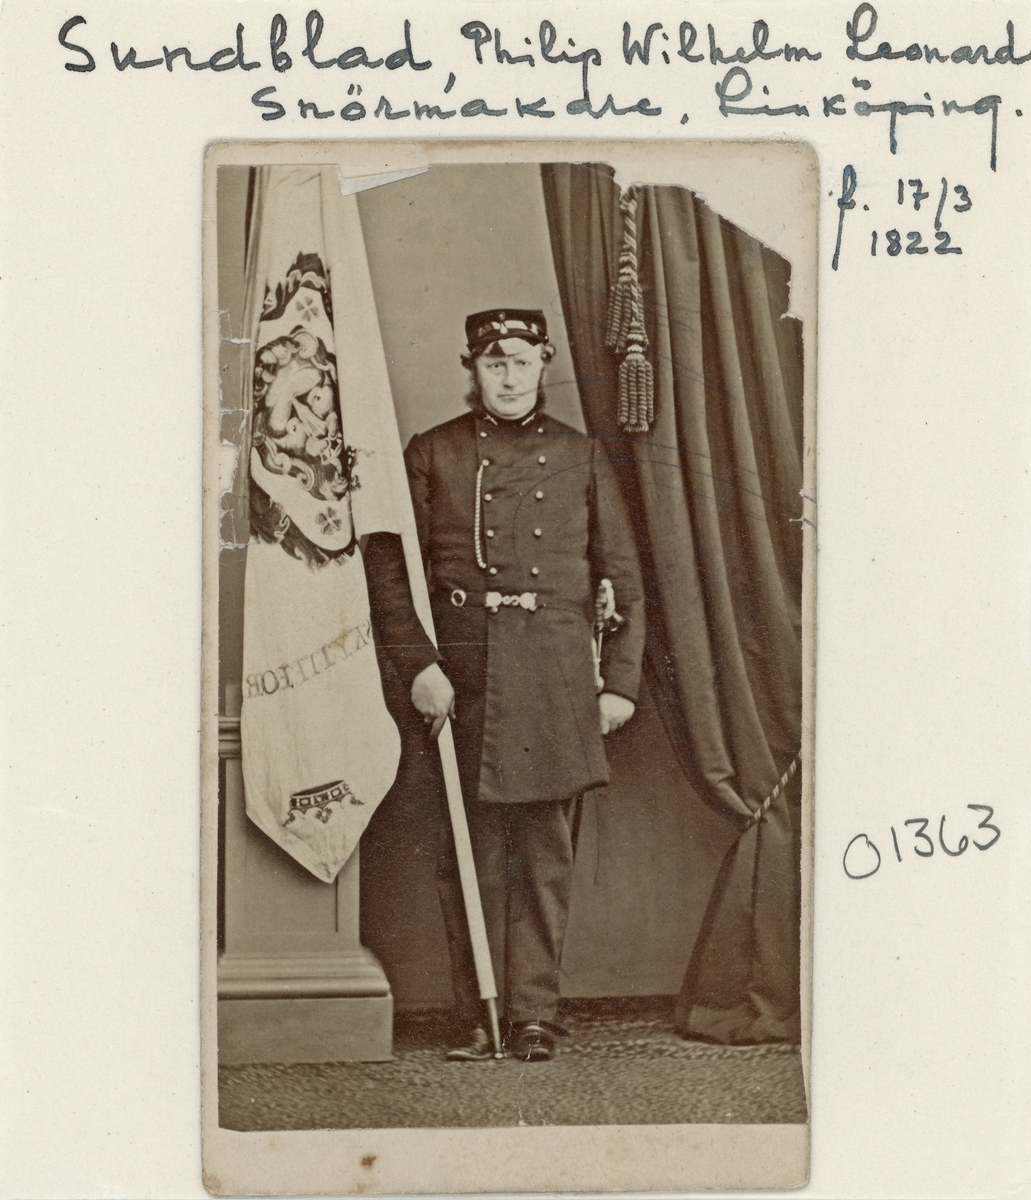 Porträtt av Philip Wilhelm Leonard Sundblad. Här iförd skarpskytteföreningens uniform. Bördig från Godegård kom han att etablera sig som snörmakare i Linköping. Från 1857 var han gift med Augusta Wilhelmina Jernstedt.